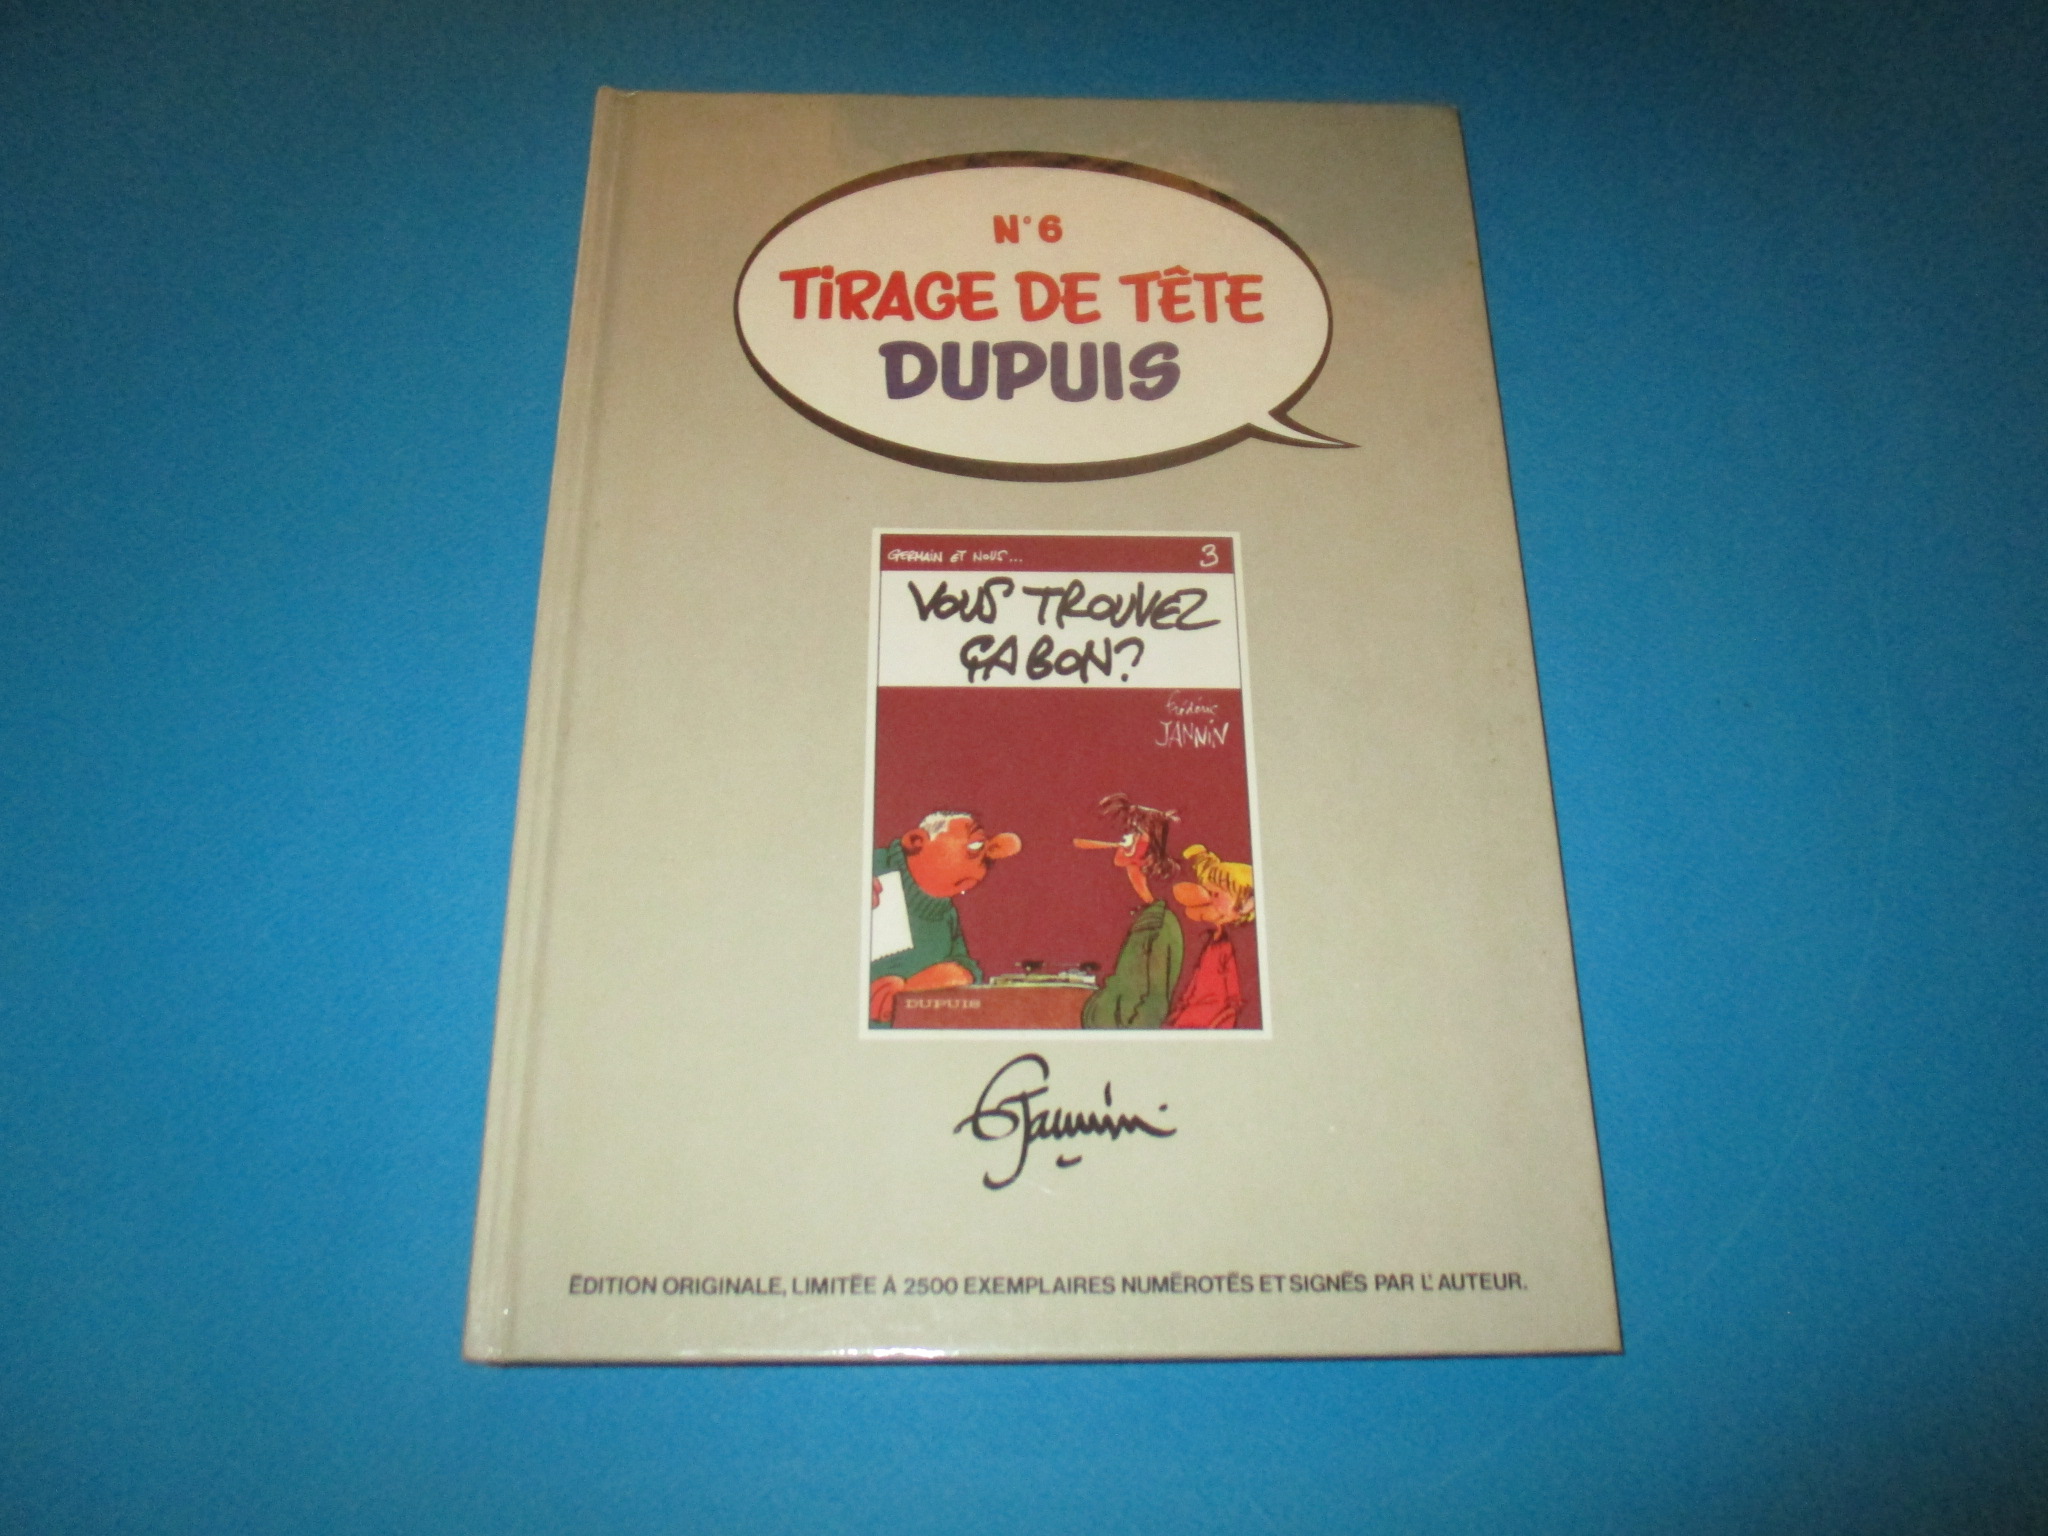 Tirage de tête Dupuis n°6, Germain et nous 3, Vous trouvez ça bon ?, Frédéric Jannin, numéroté et signé 1982